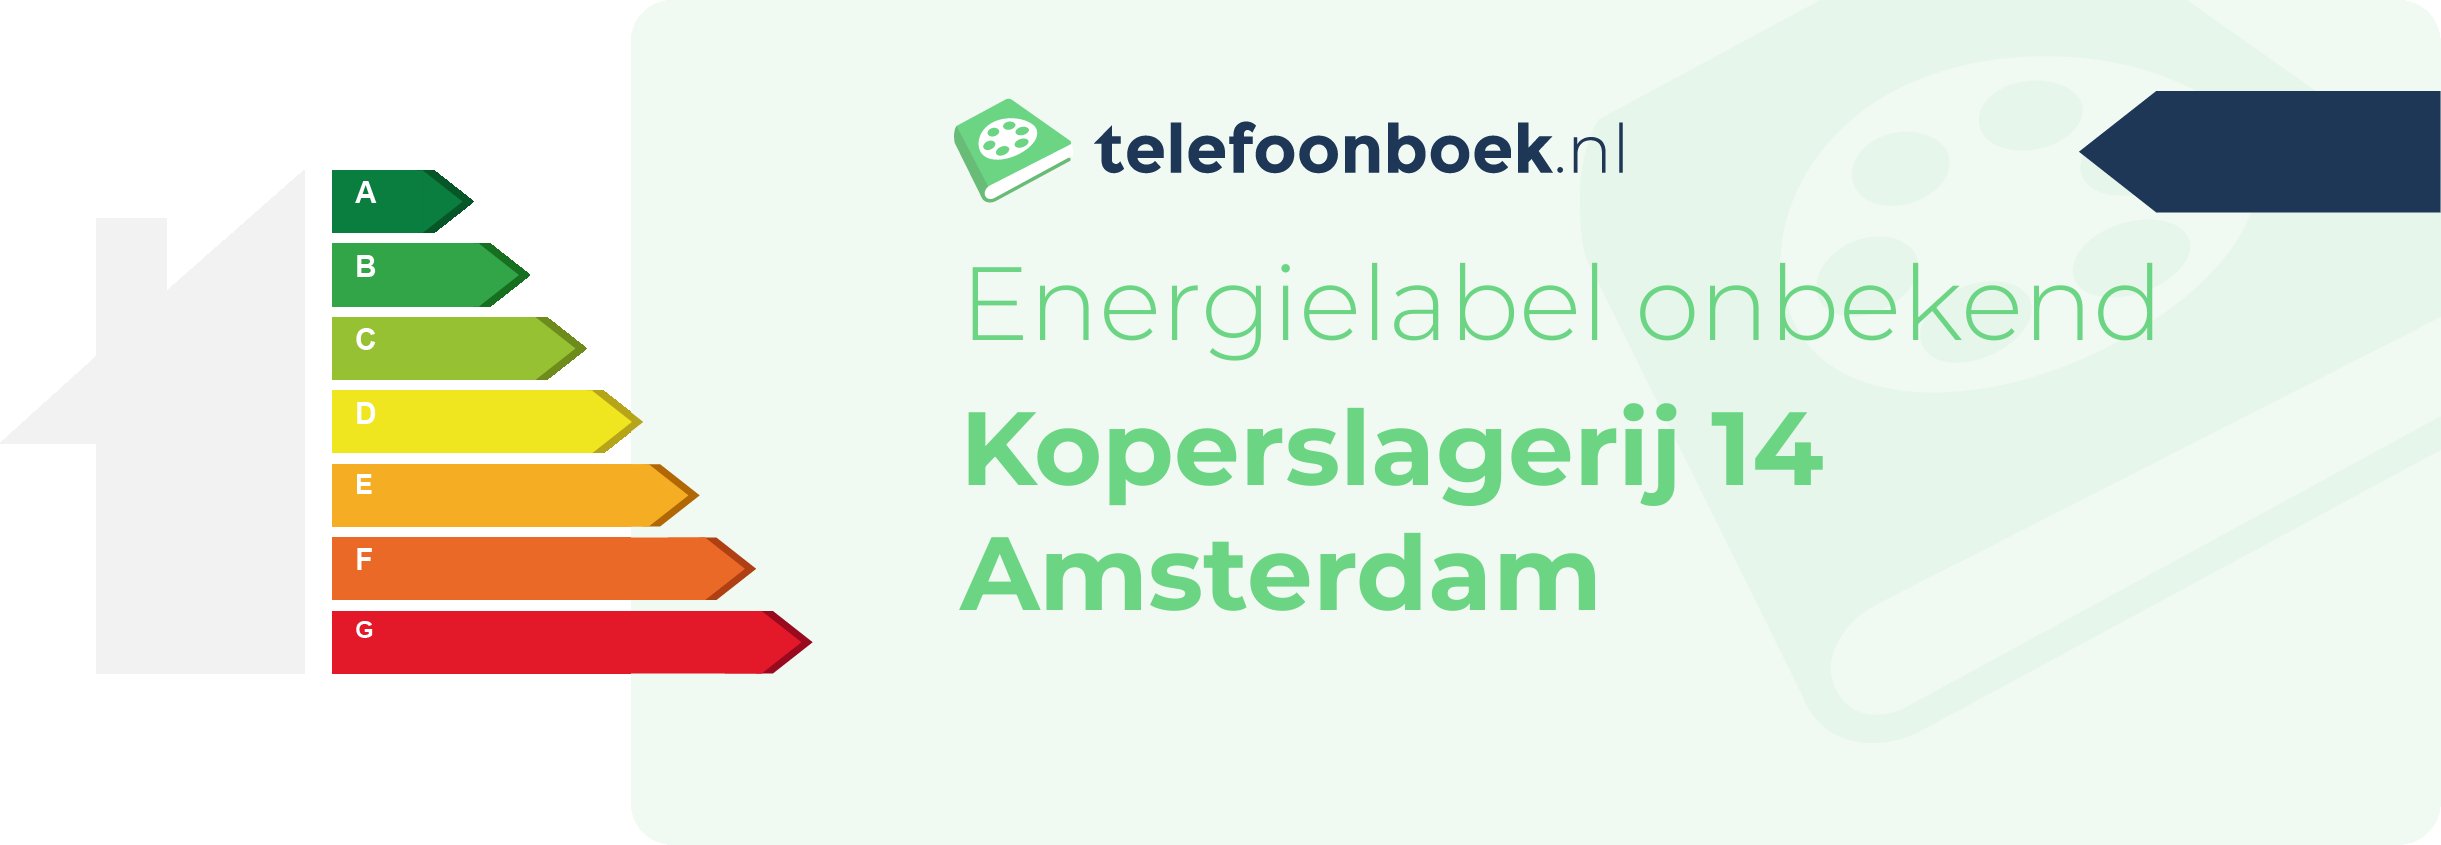 Energielabel Koperslagerij 14 Amsterdam